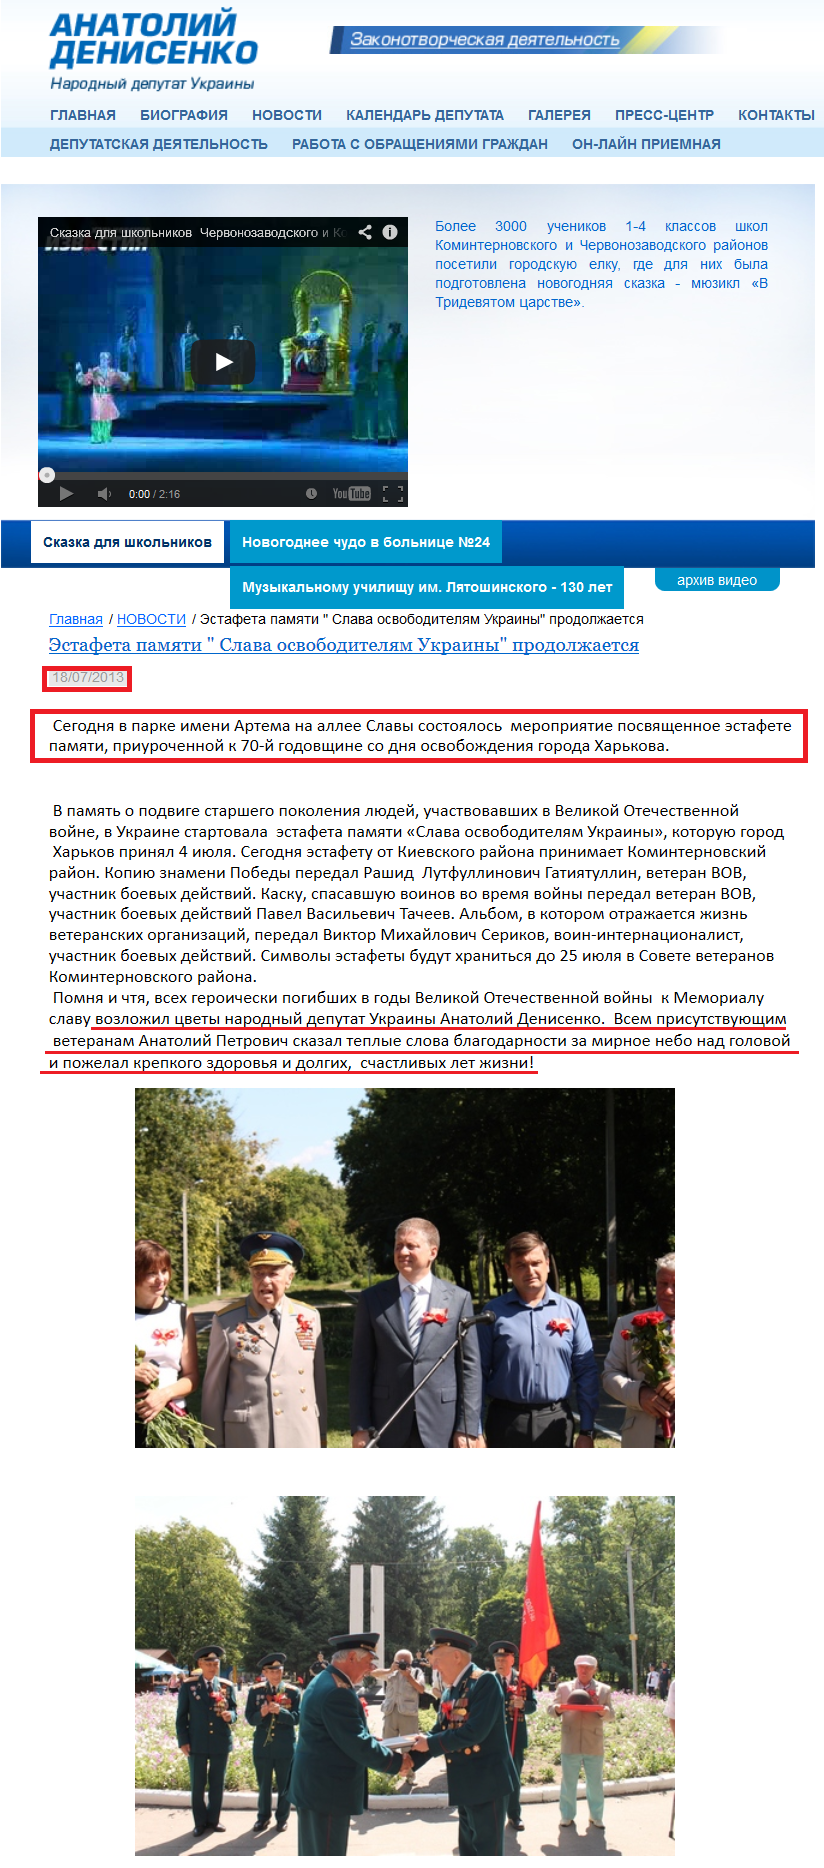 http://denisenko.kharkov.ua/news/498--q-q-.html